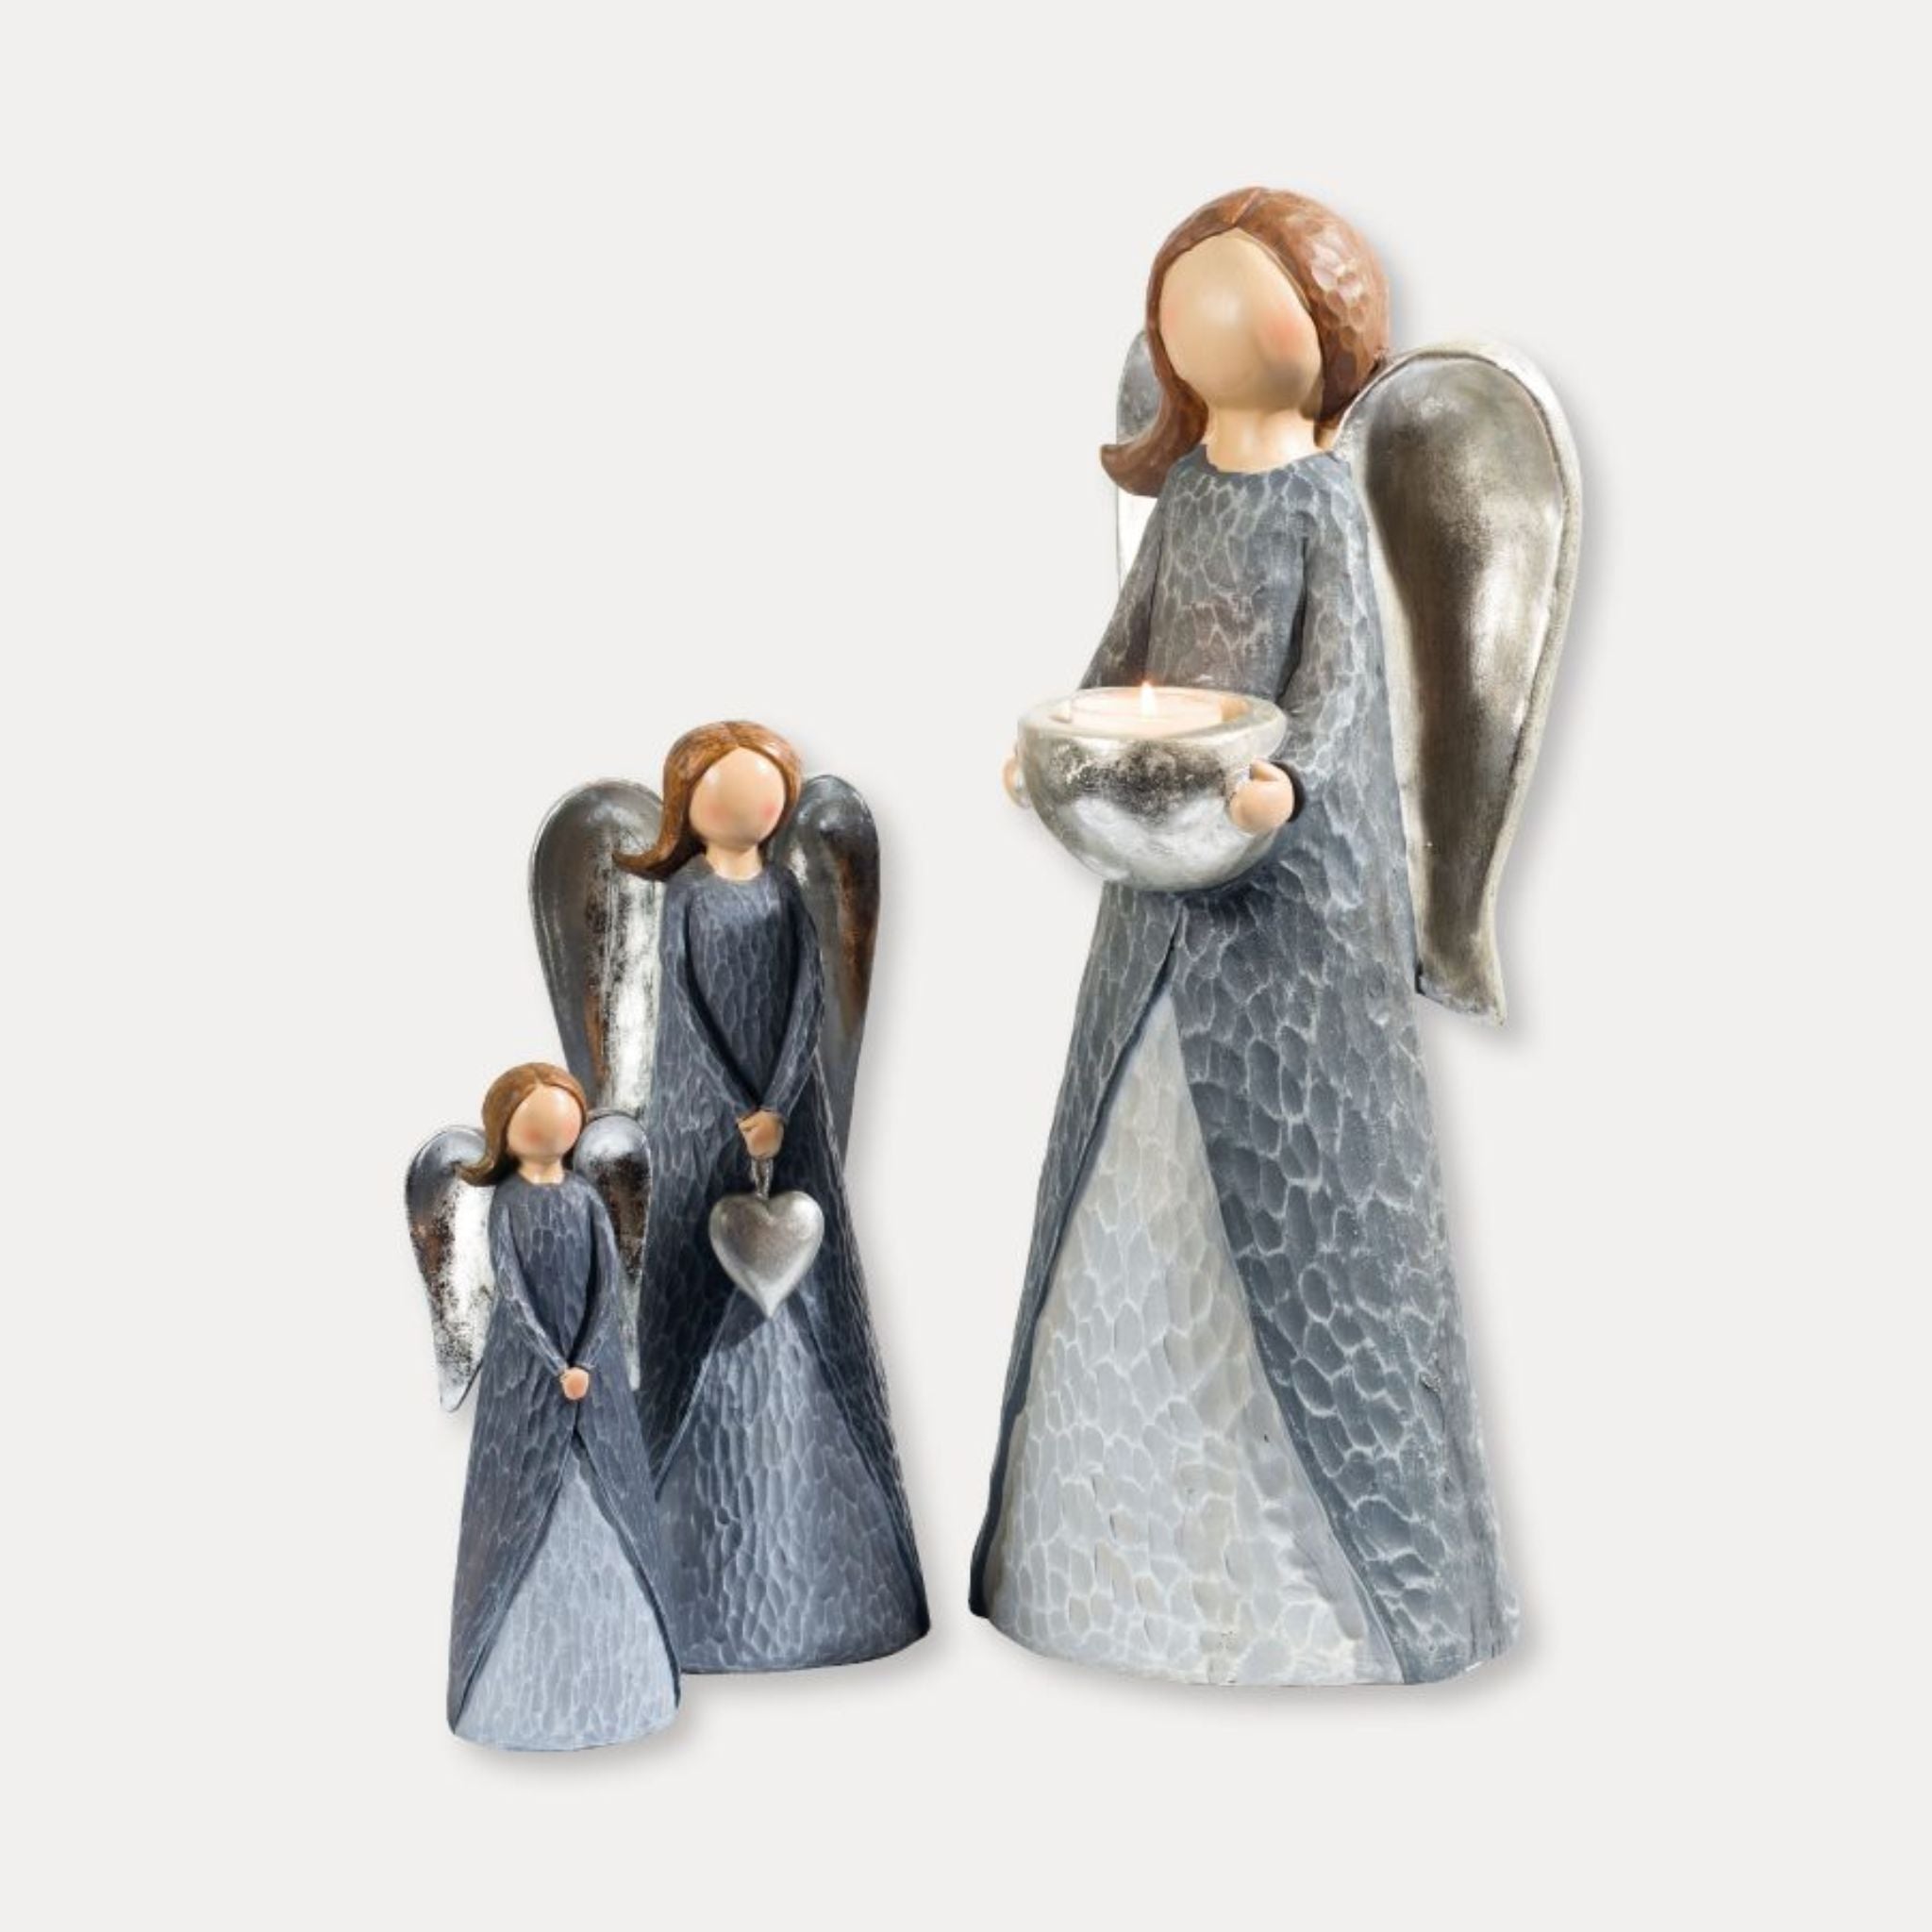 Angel figurines